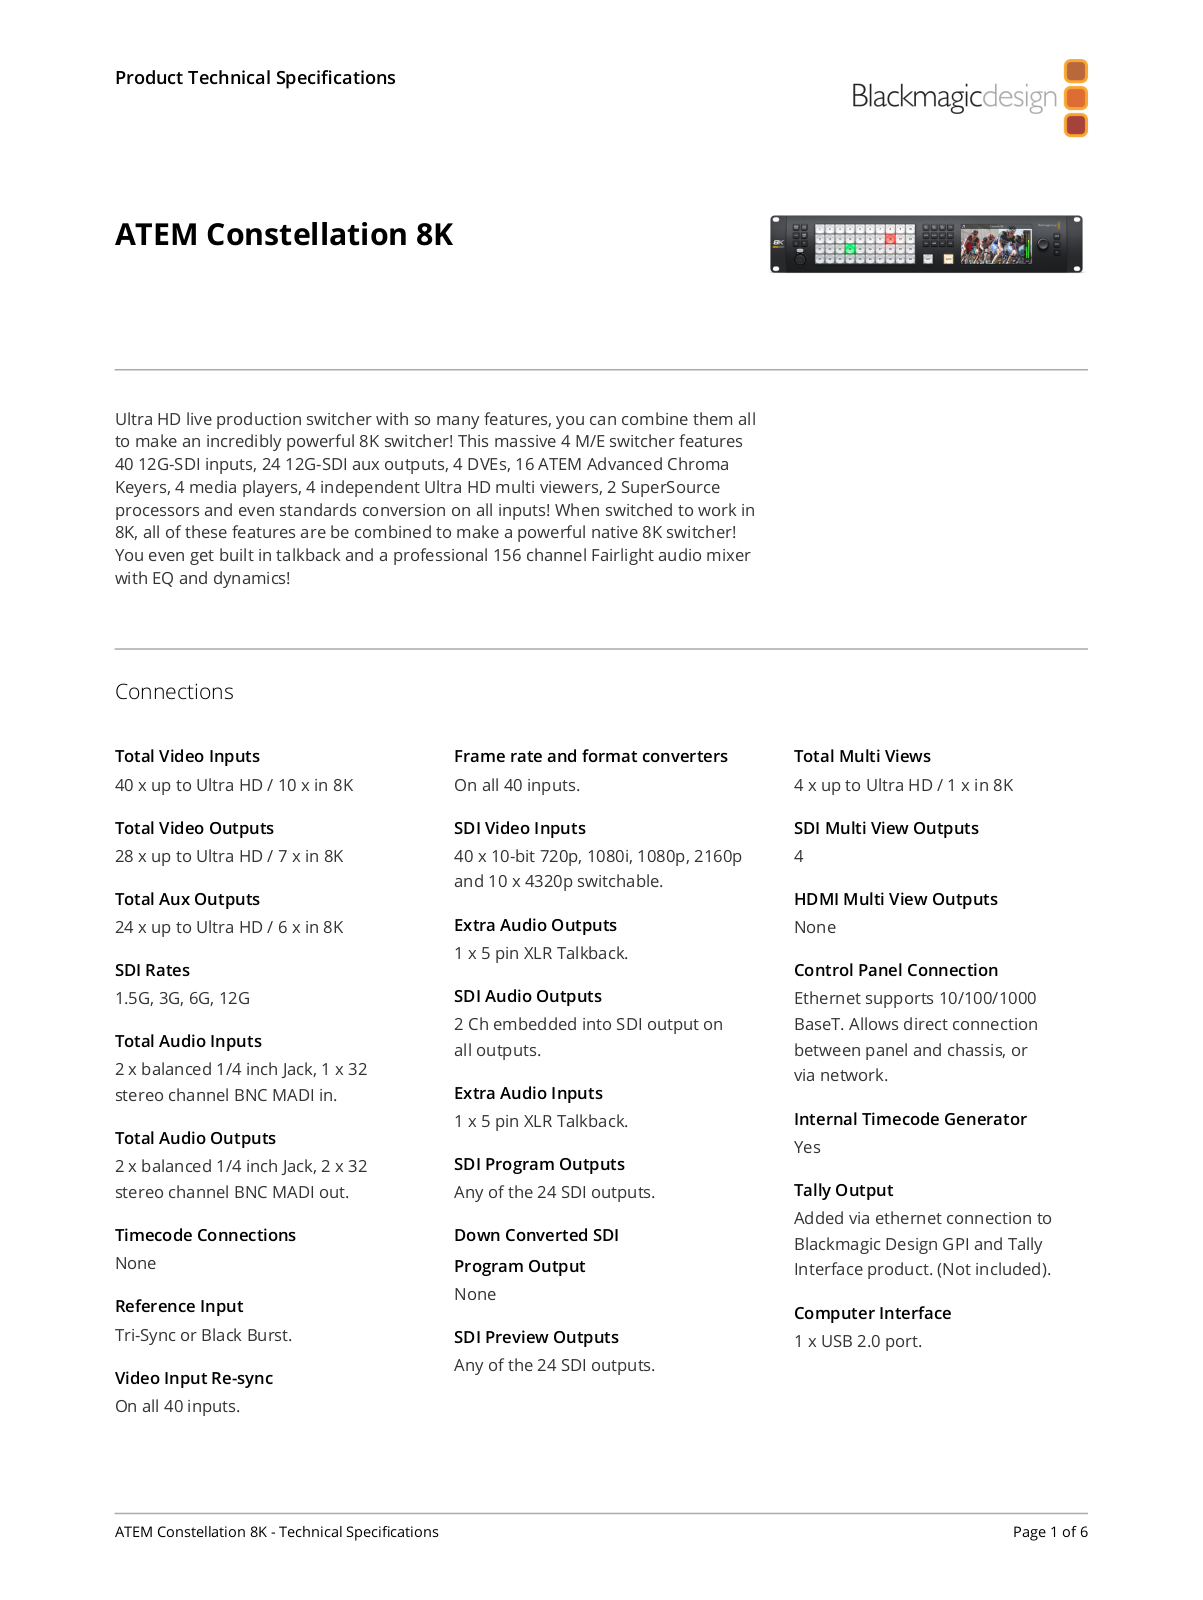 Blackmagic Design ATEM Constellation 8K Specifications